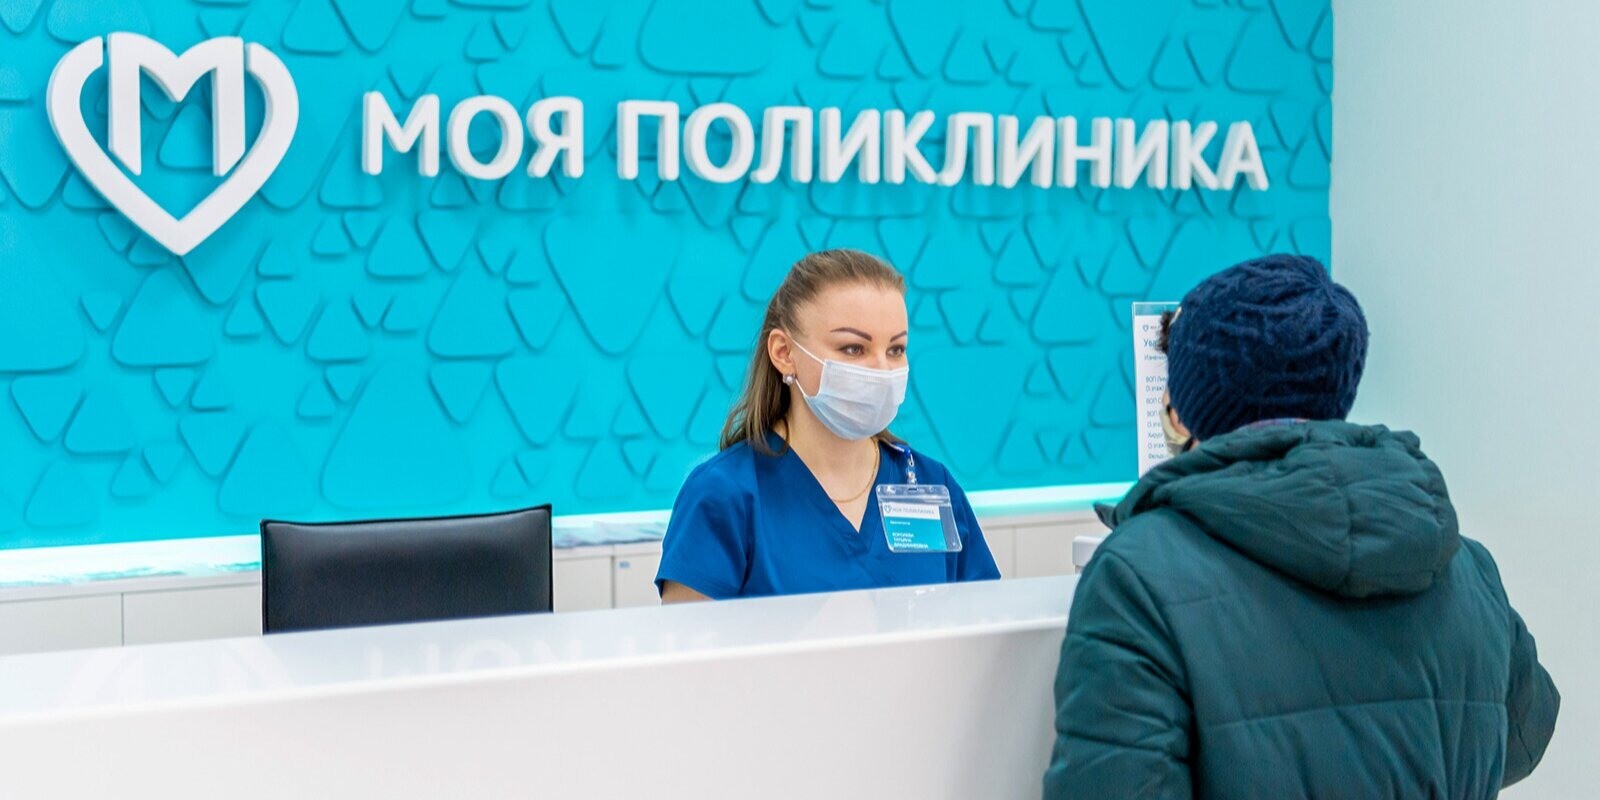 Режим работы медицинских организаций Москвы в период праздничных дней будет скорректирован